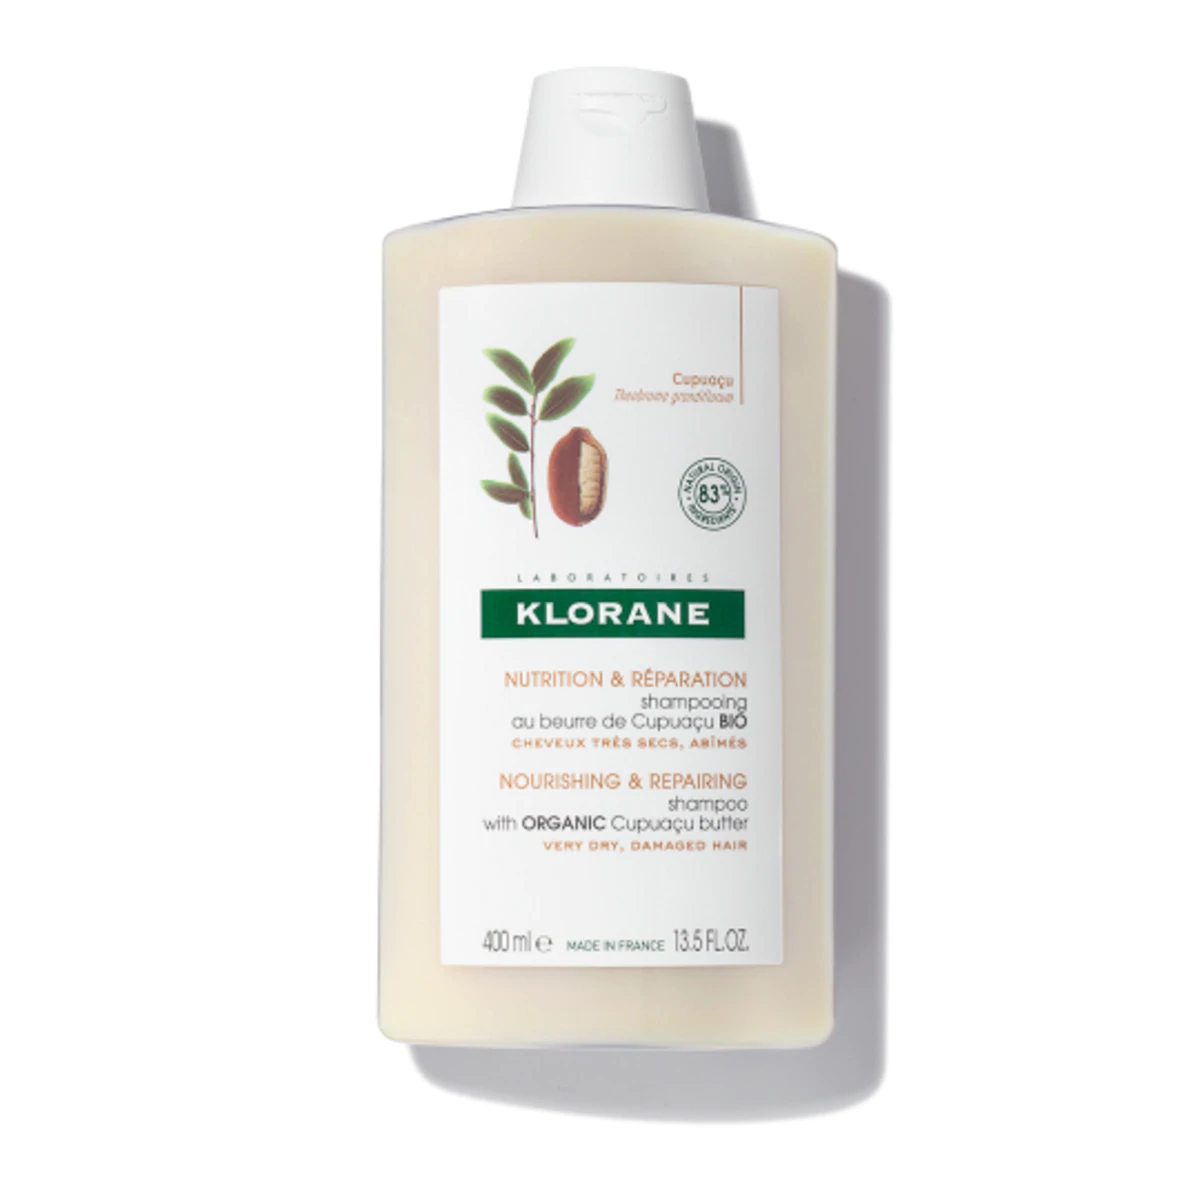 Klorane Shampoo with Organic Cupuacu Butter